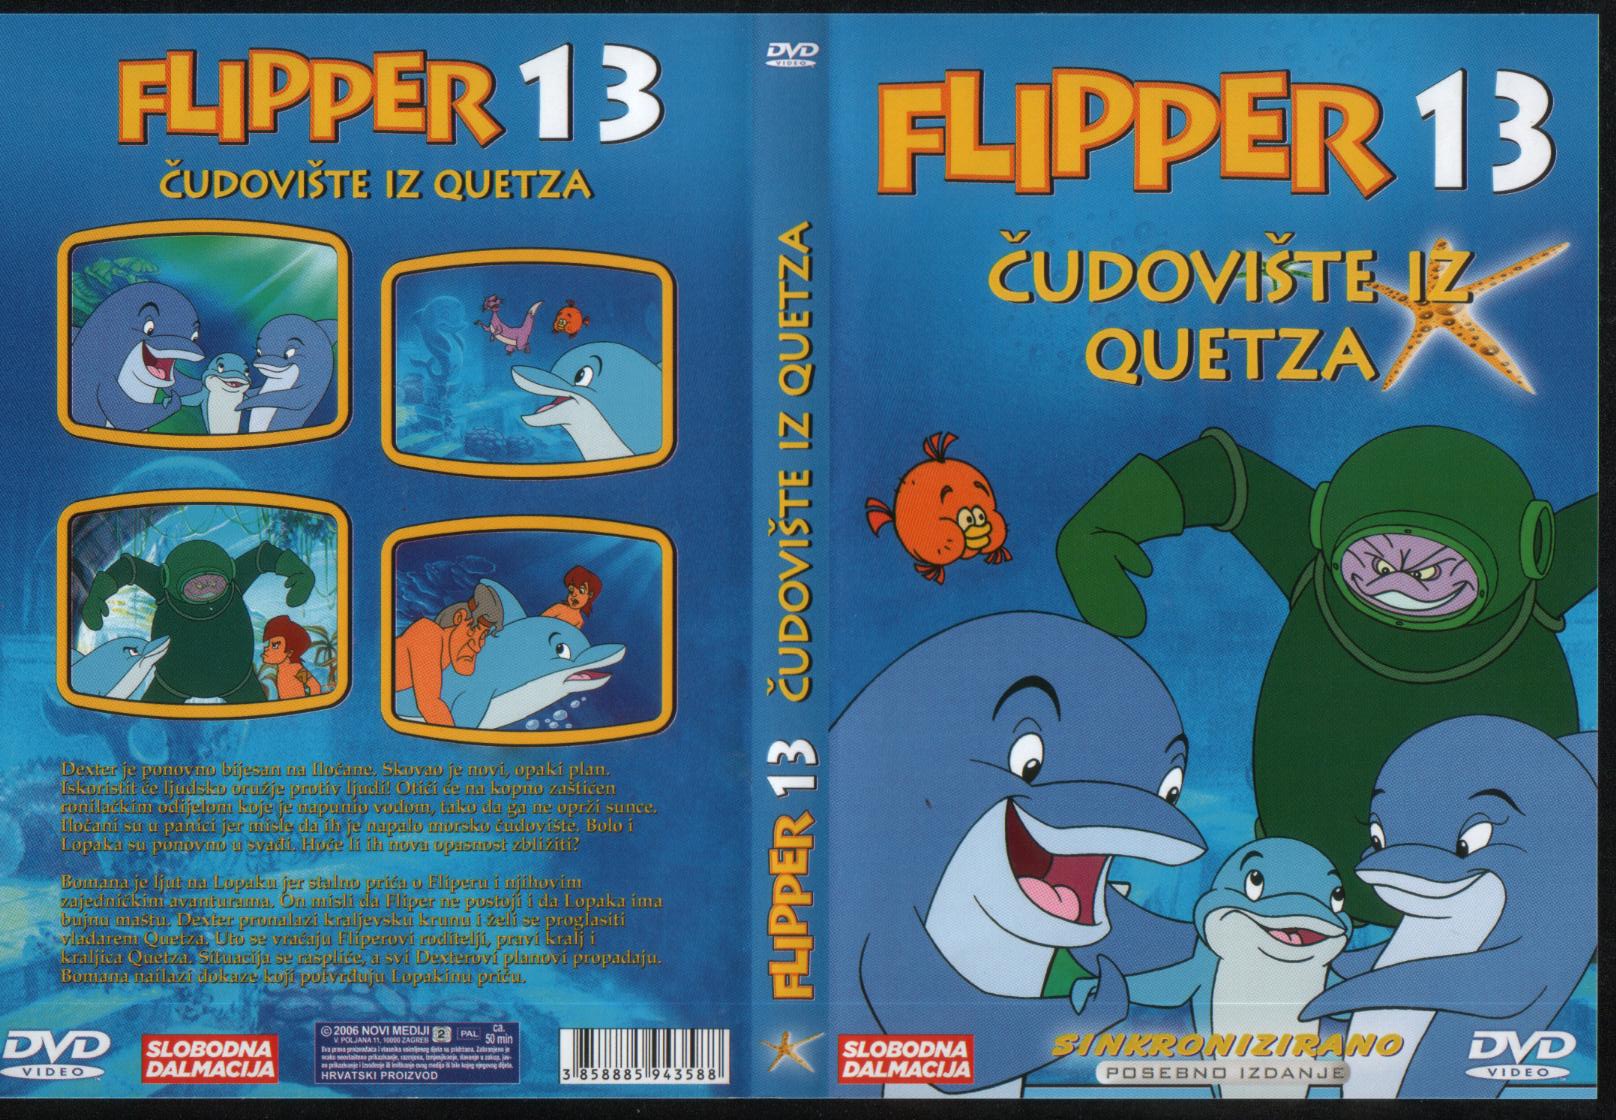 Click to view full size image -  DVD Cover - F - DVD- FLIPPER13.jpg - DVD- FLIPPER13.jpg